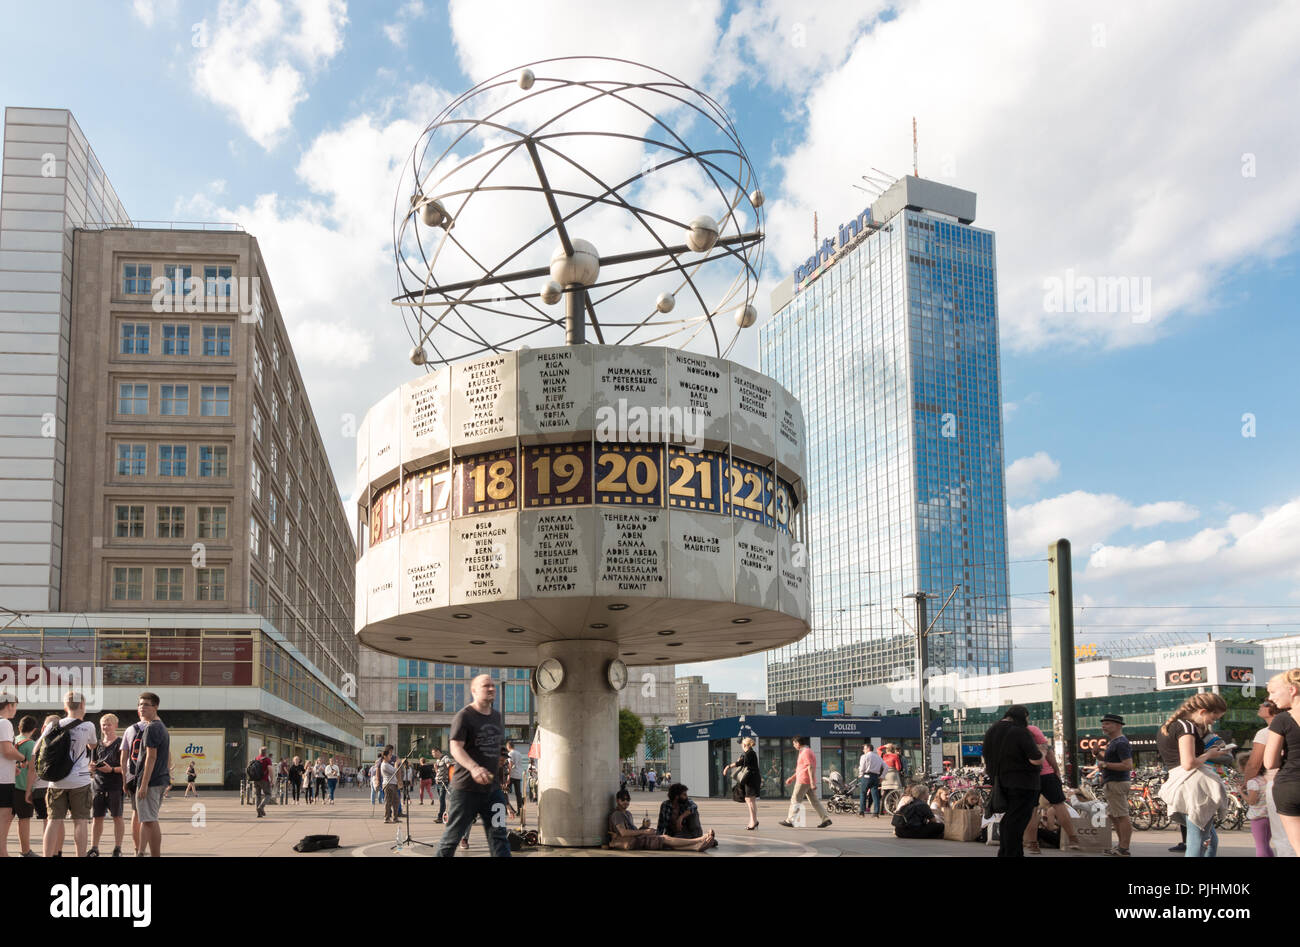 Berlin, Allemagne - 5 septembre 2018 : vision du monde horloge temps réel sur Alexanderplatz à Berlin. Le monde de l'horloge du temps est un lieu de rencontre populaire pour les voyages Banque D'Images